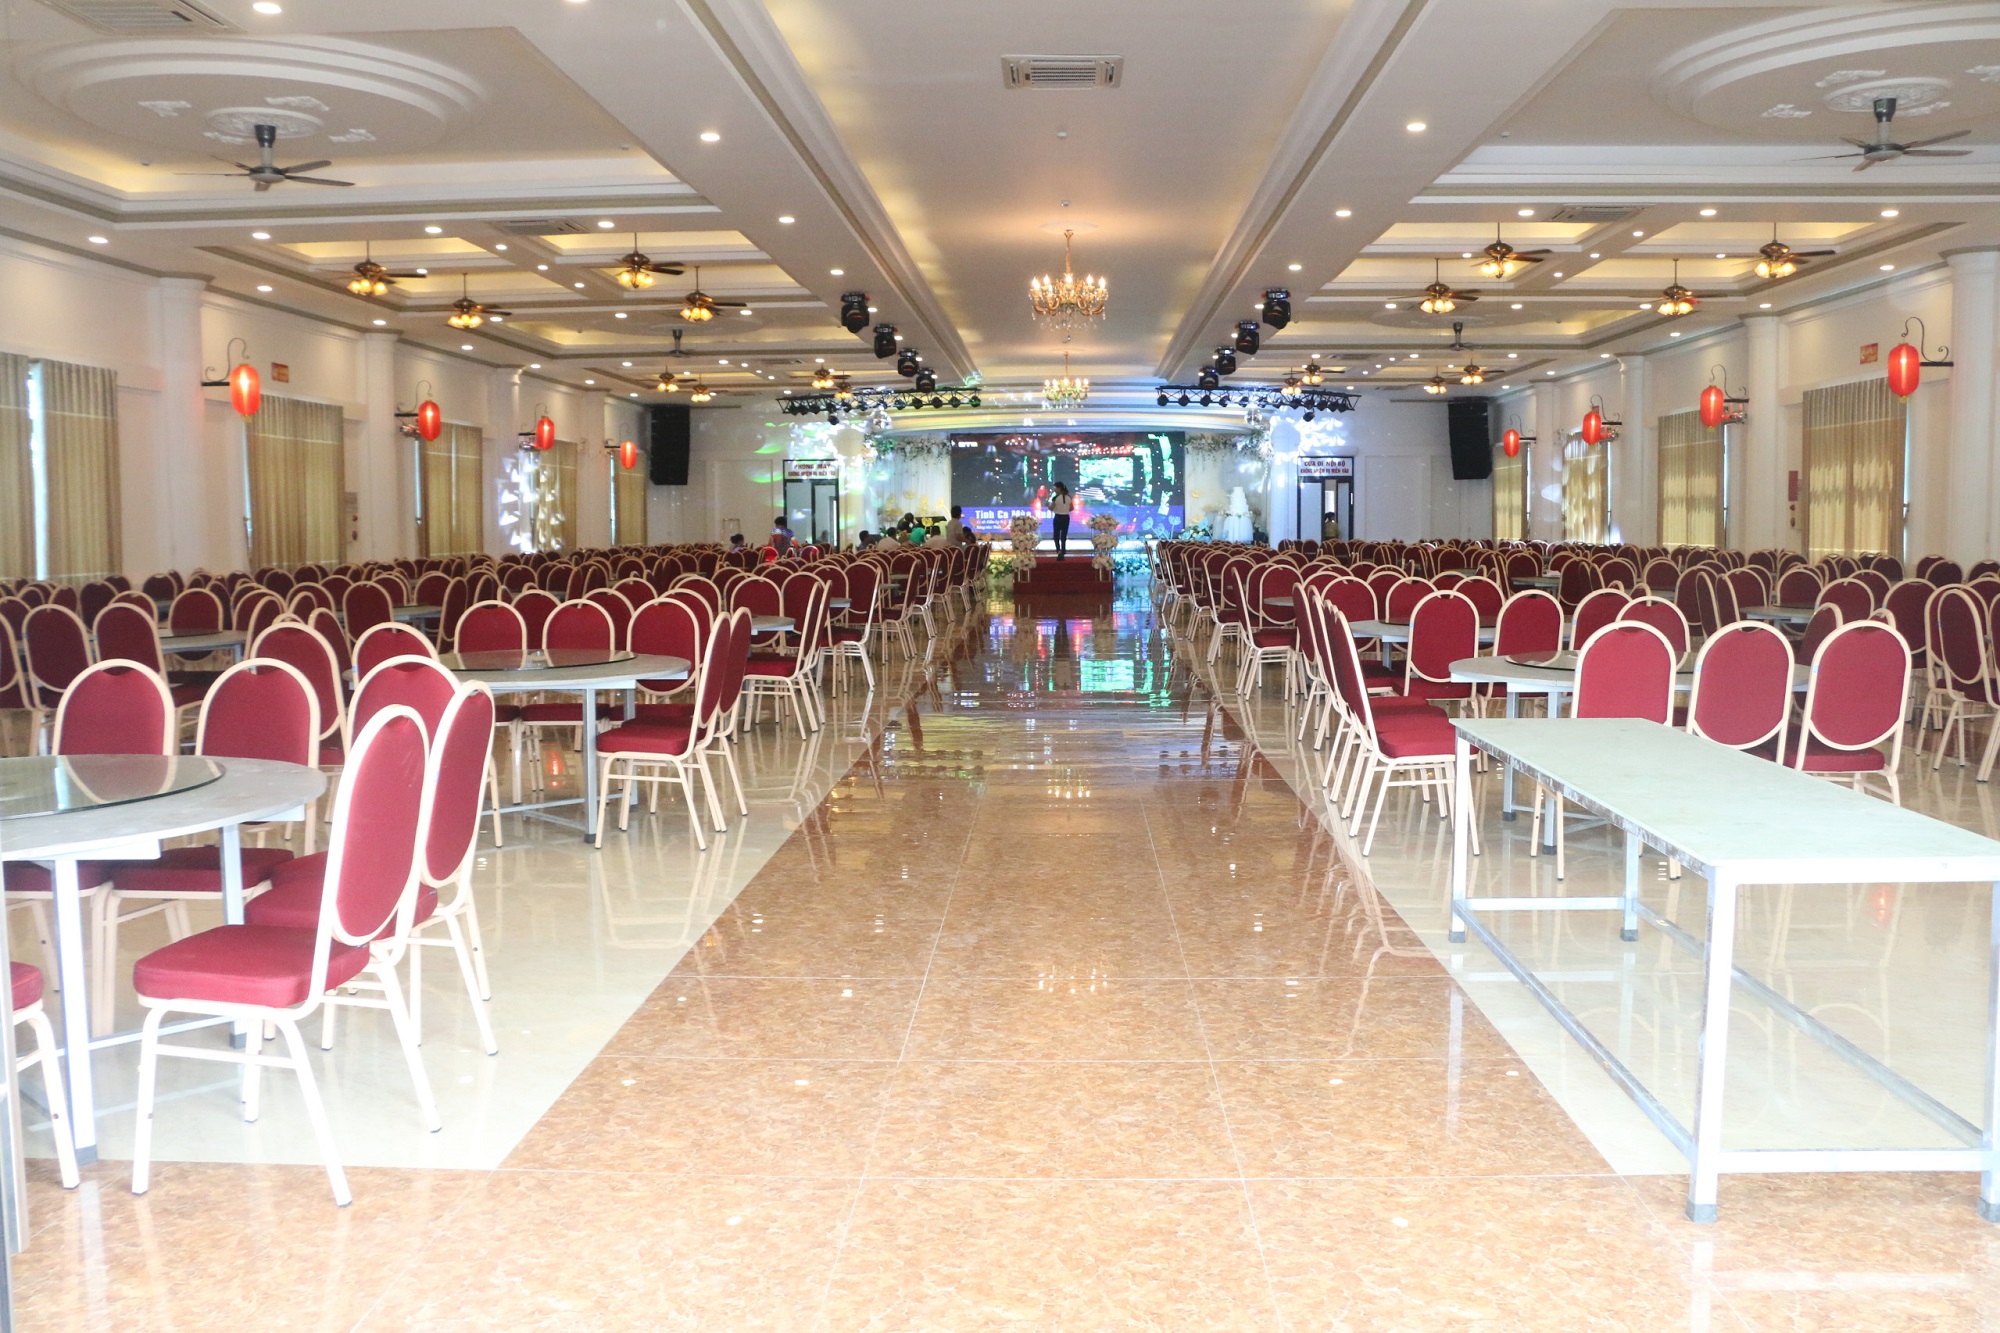 Sự kiện xanh, cho thuê địa điểm tổ chức sự kiện, địa điểm tổ chức sự kiện tại Phú Thọ, Viet Green media